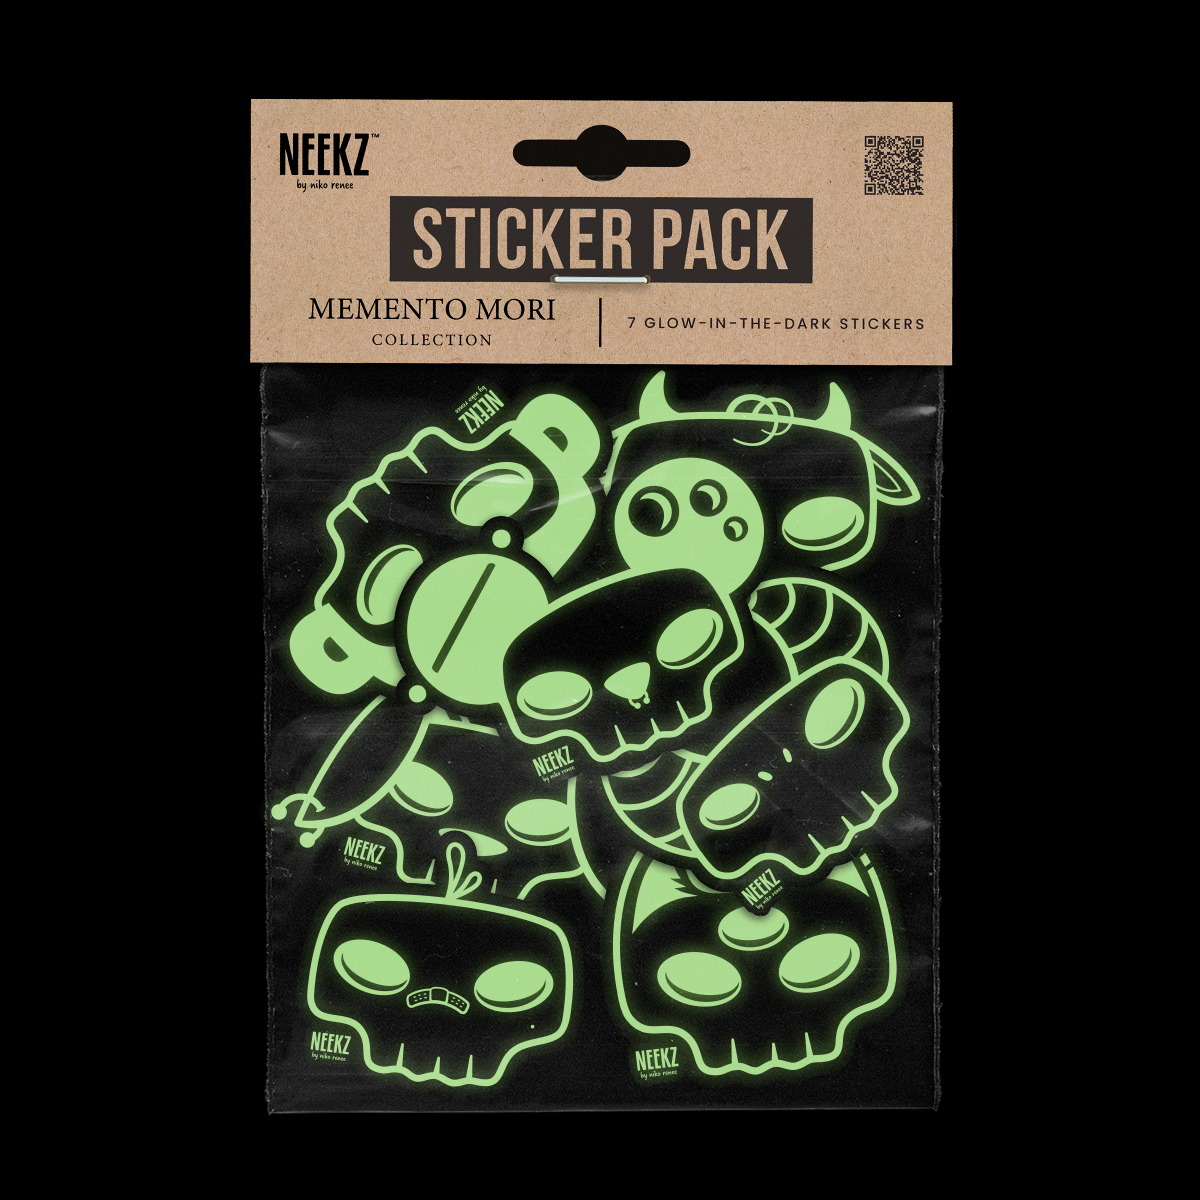 Glow-in-the-dark Sticker Pack, lights off.